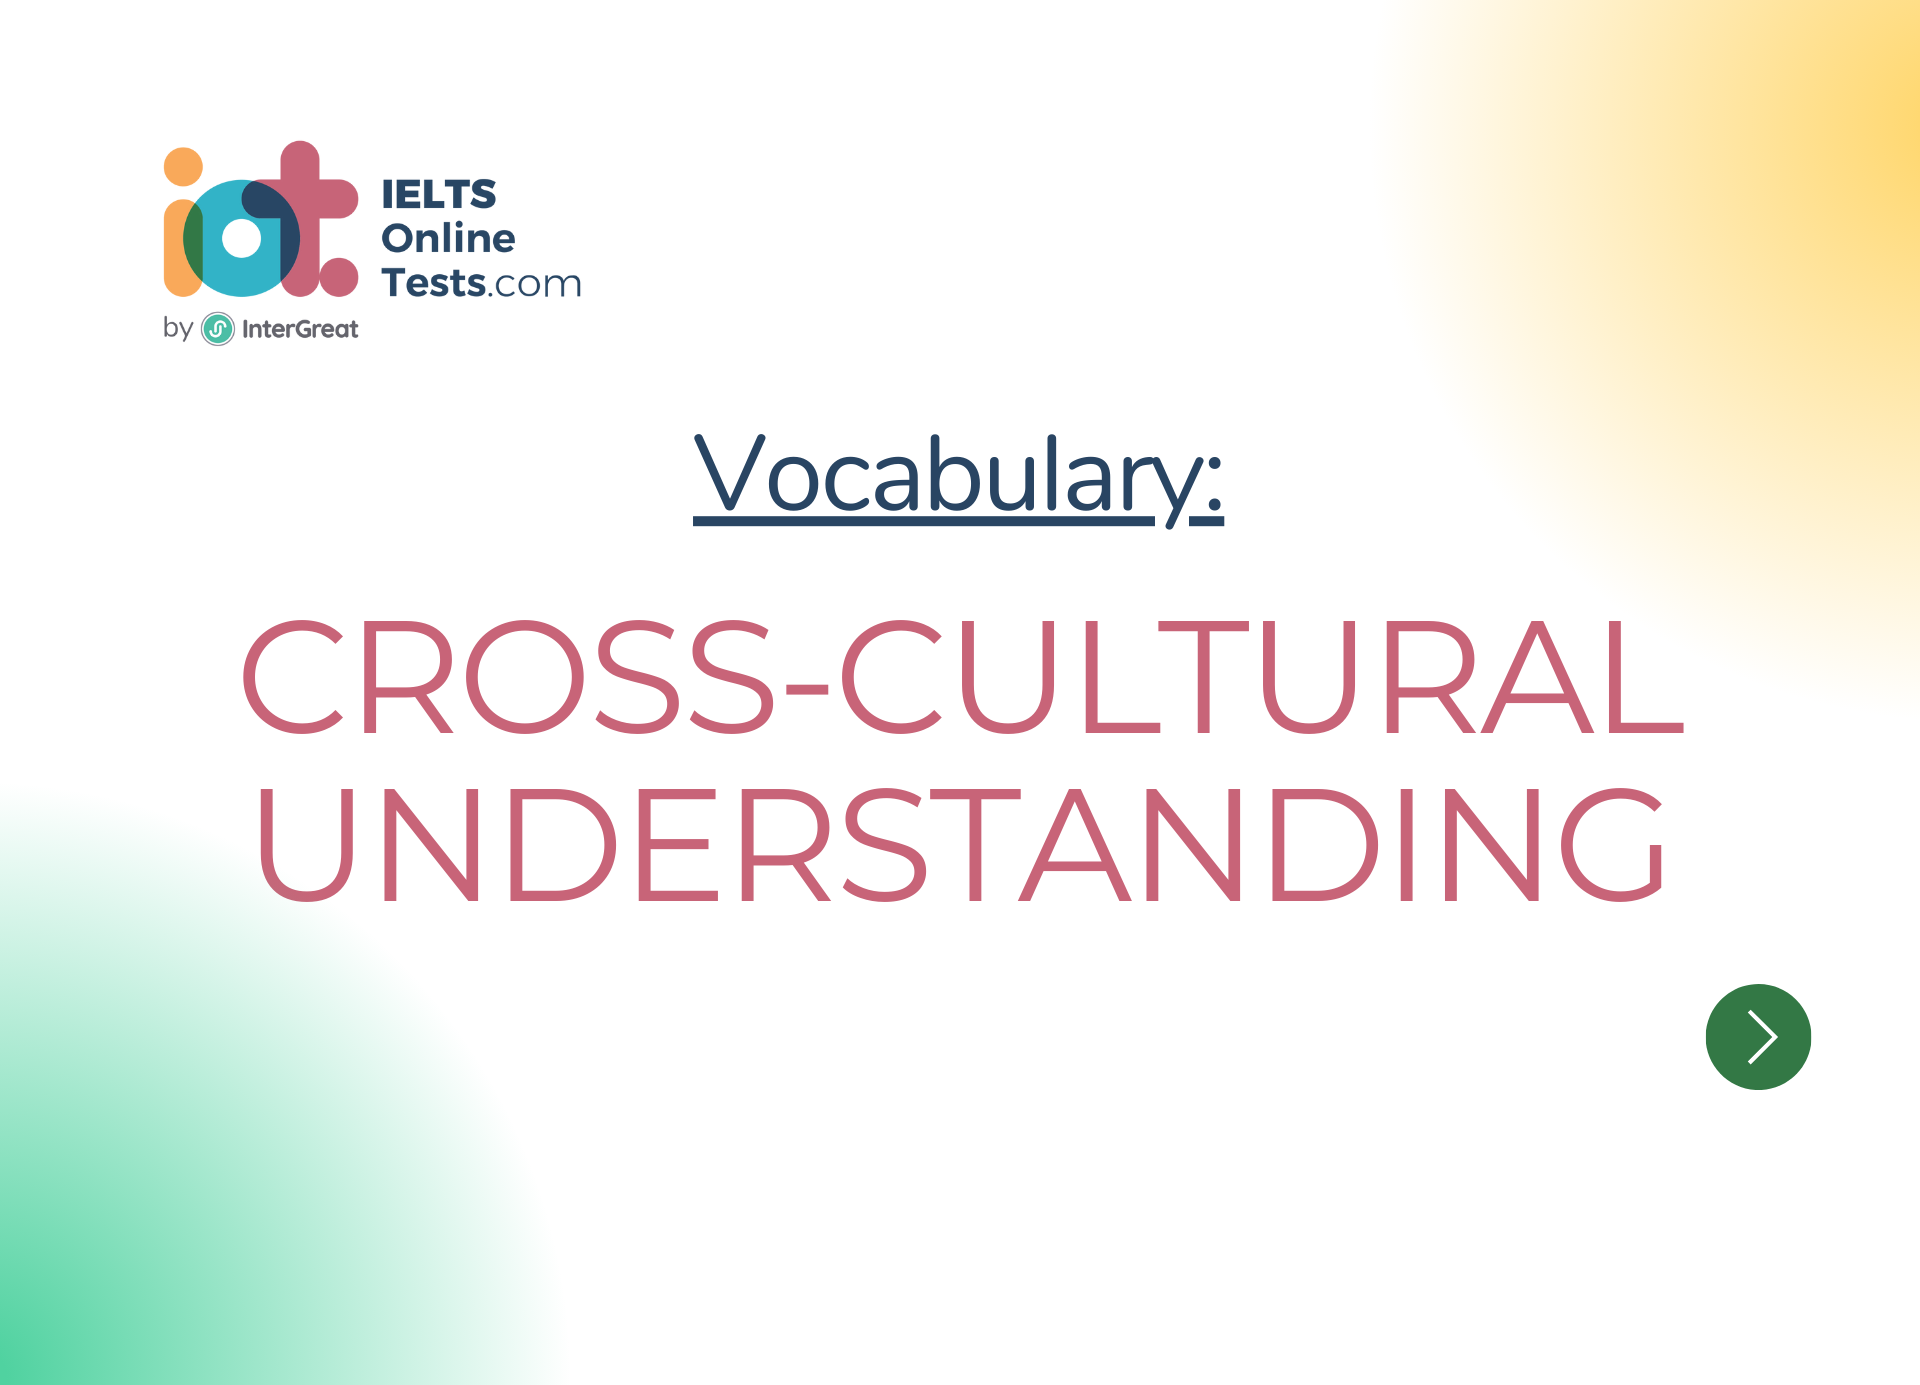 Cross-cultural understanding